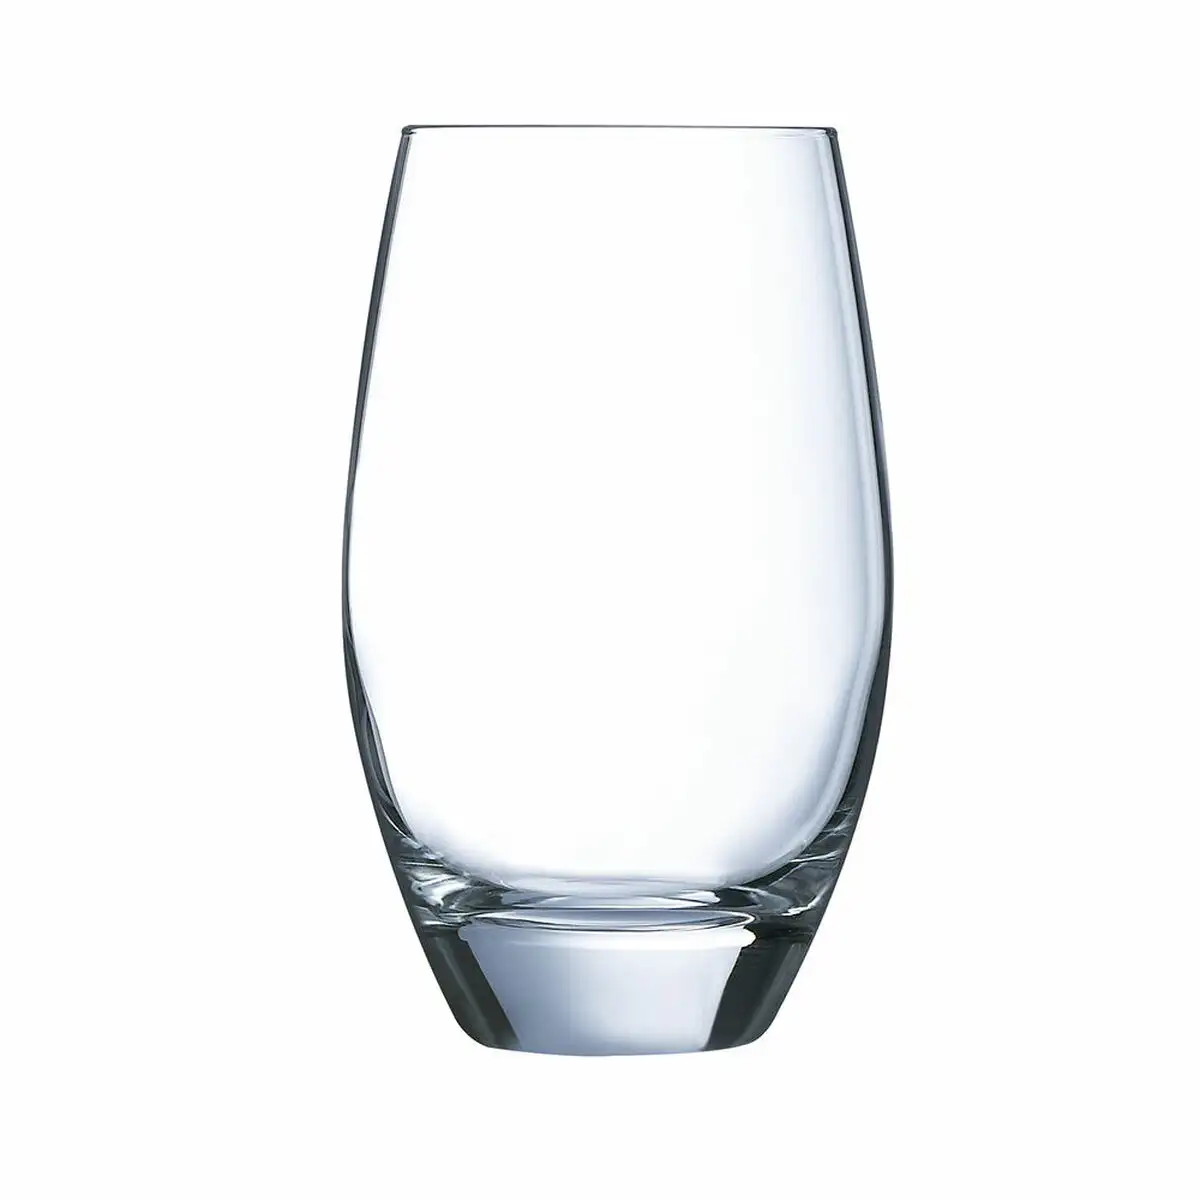 Set de verres arcoroc malea 6 unites transparent verre 35 cl _5418. DIAYTAR SENEGAL - L'Art de Vivre l'Excellence au Quotidien. Explorez notre gamme et choisissez des produits qui ajoutent une note de prestige à votre vie.